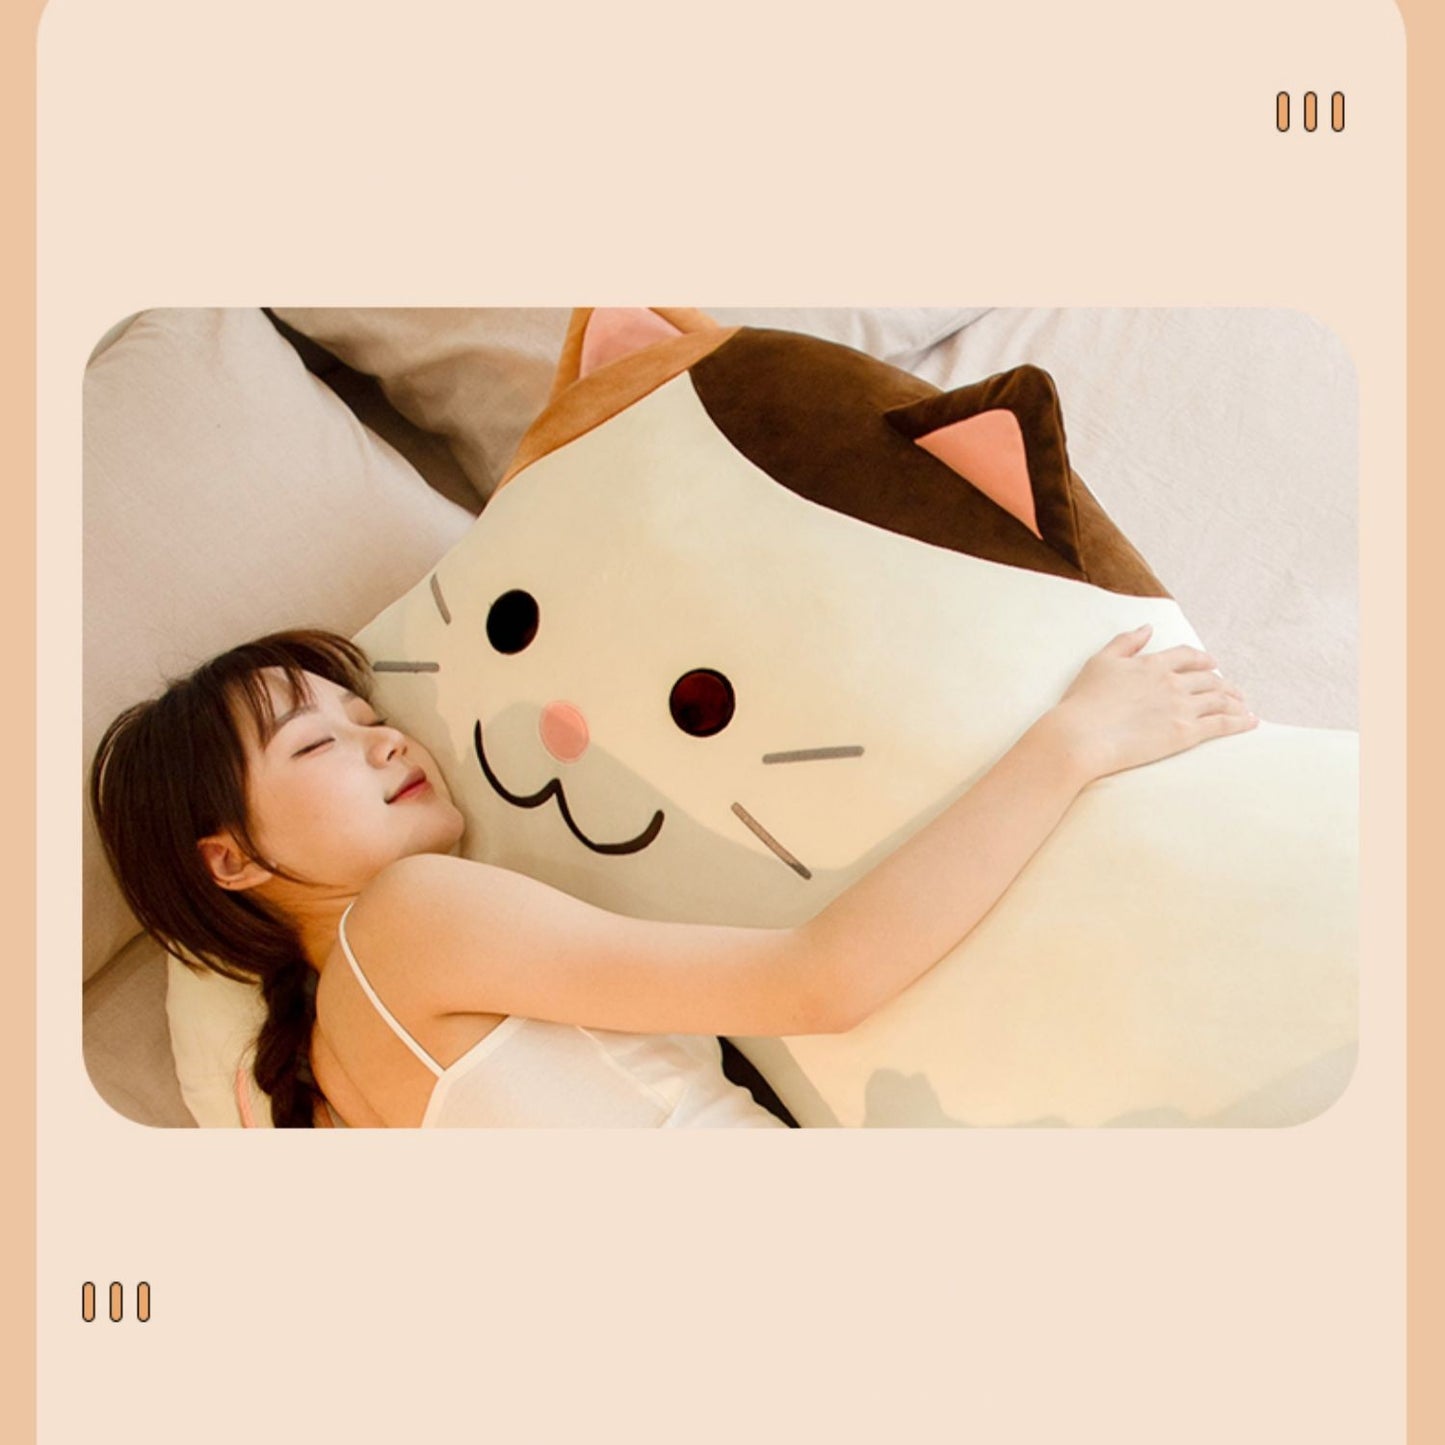 Kawaii Cat Body Pillow Plush